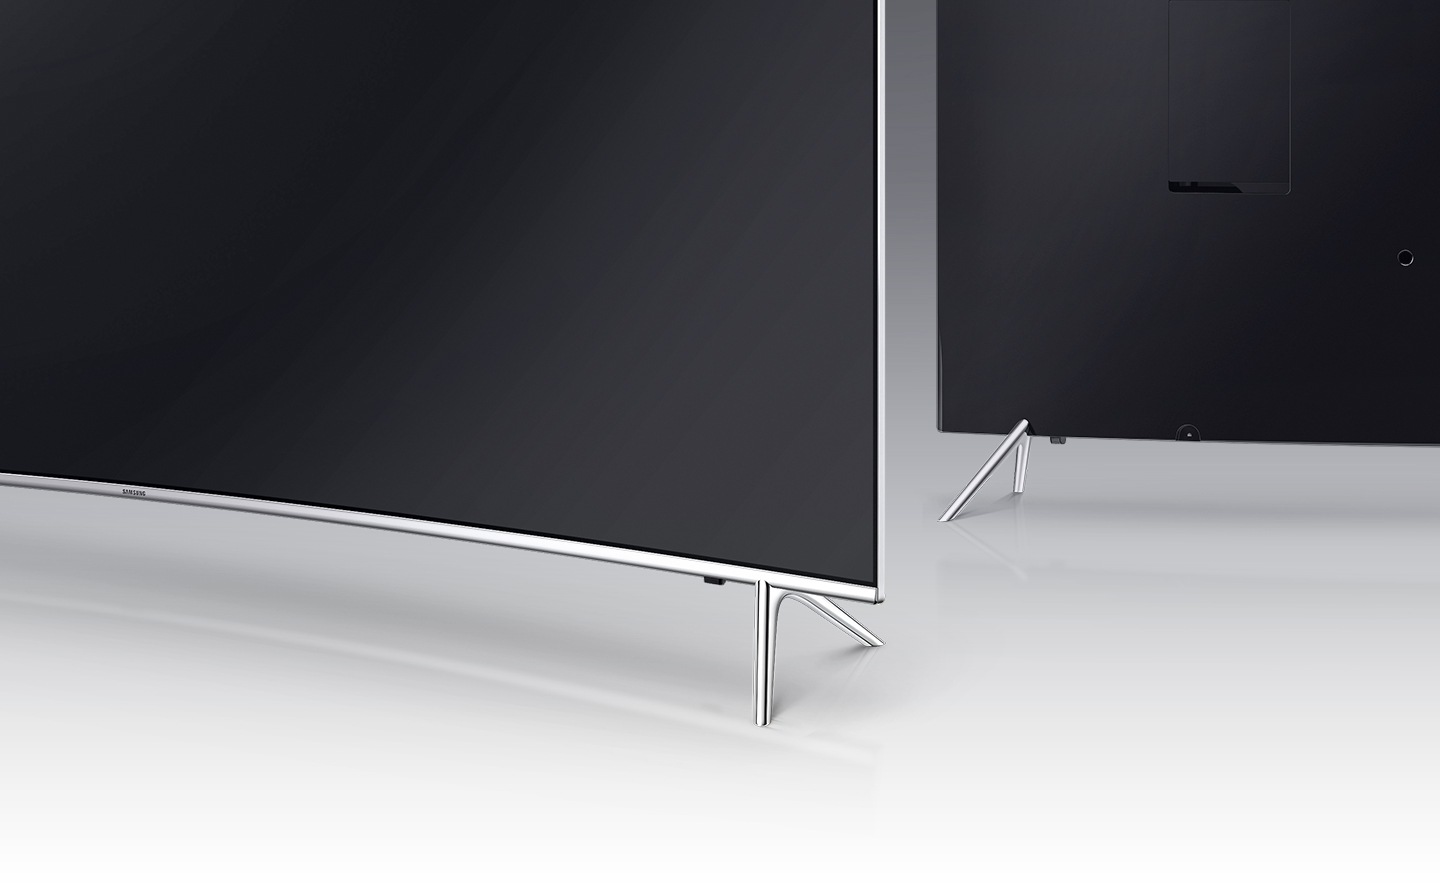 Un'immagine angolo posteriore del T-stand della TV SUHD di Samsung.